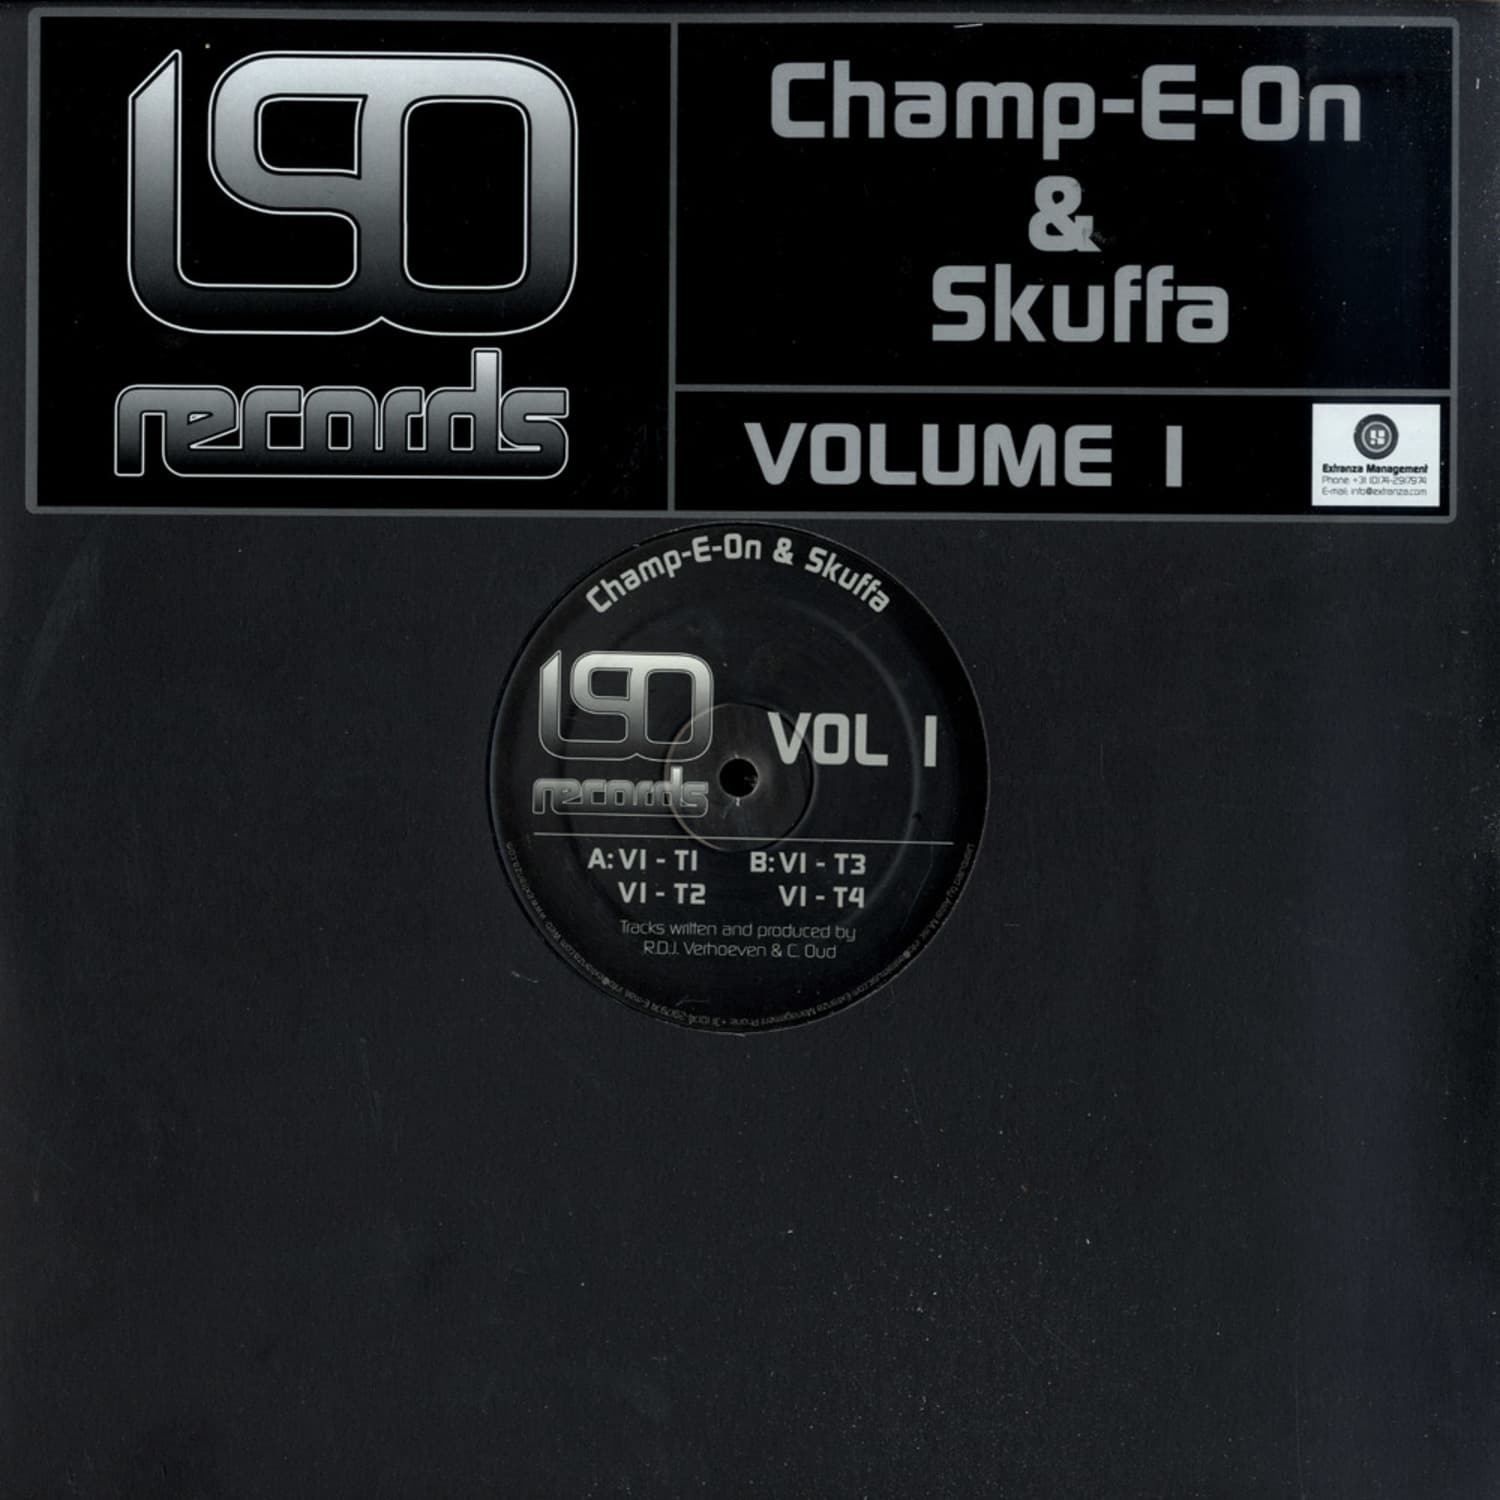 Champ-E-On & Skuffa - VOLUME 1